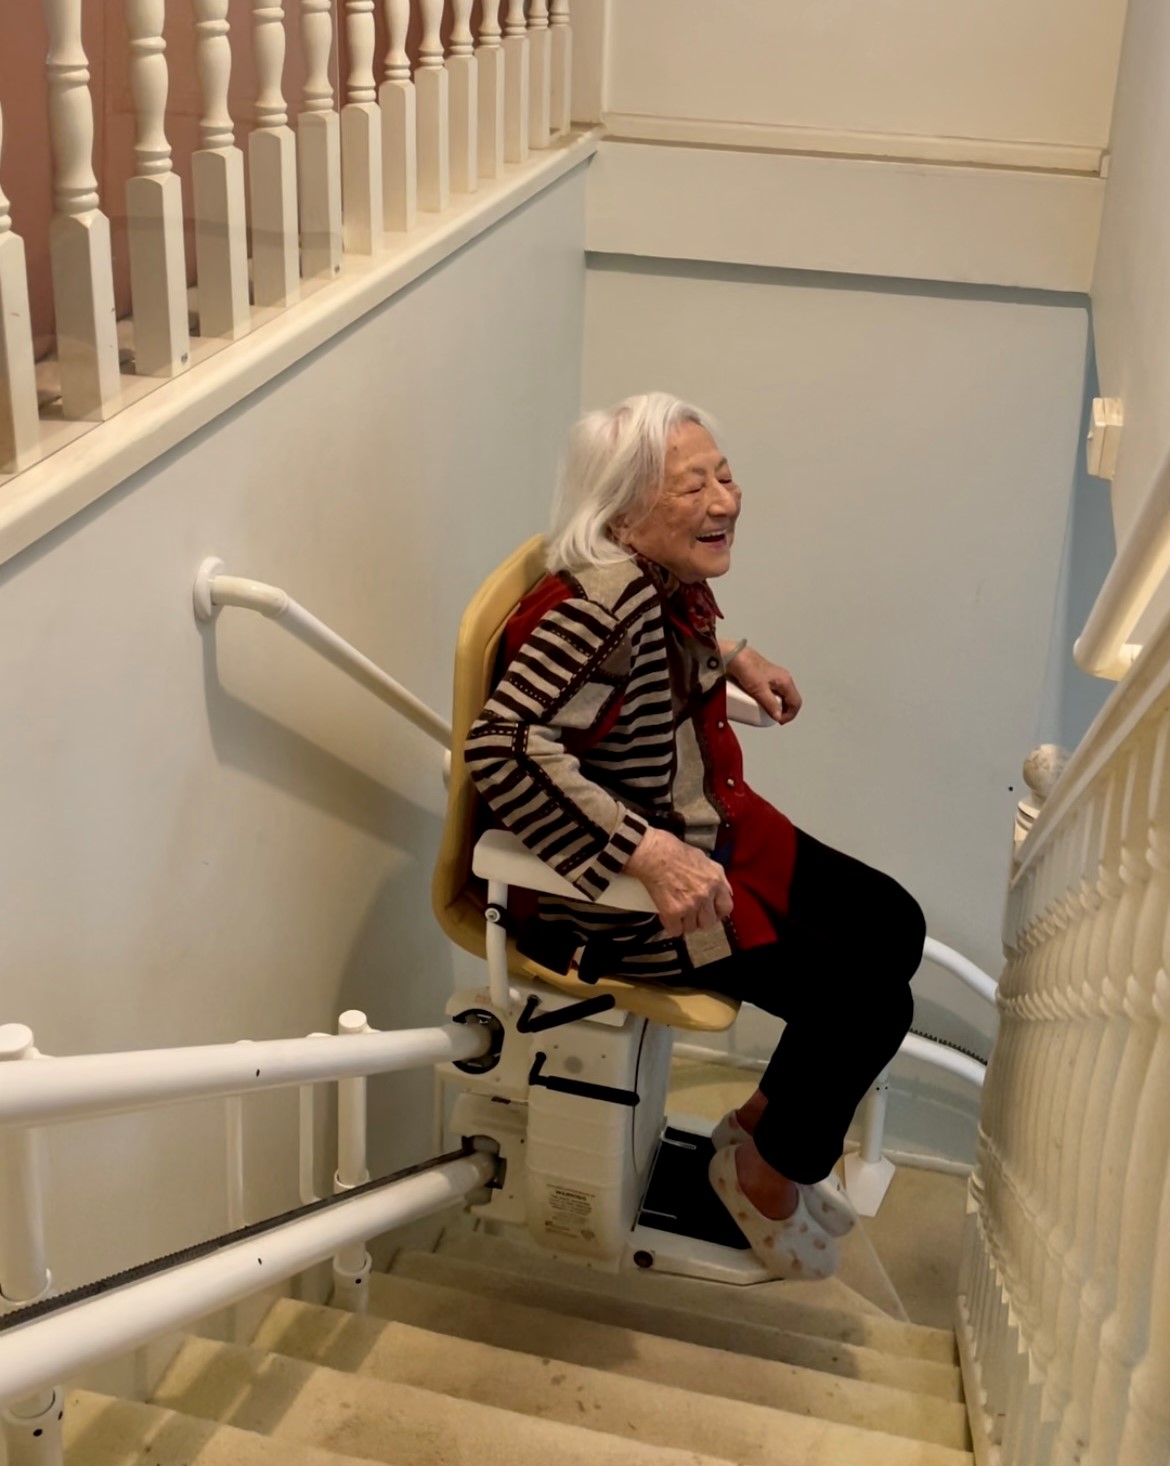 An elderly woman riding an indoor stair lift.